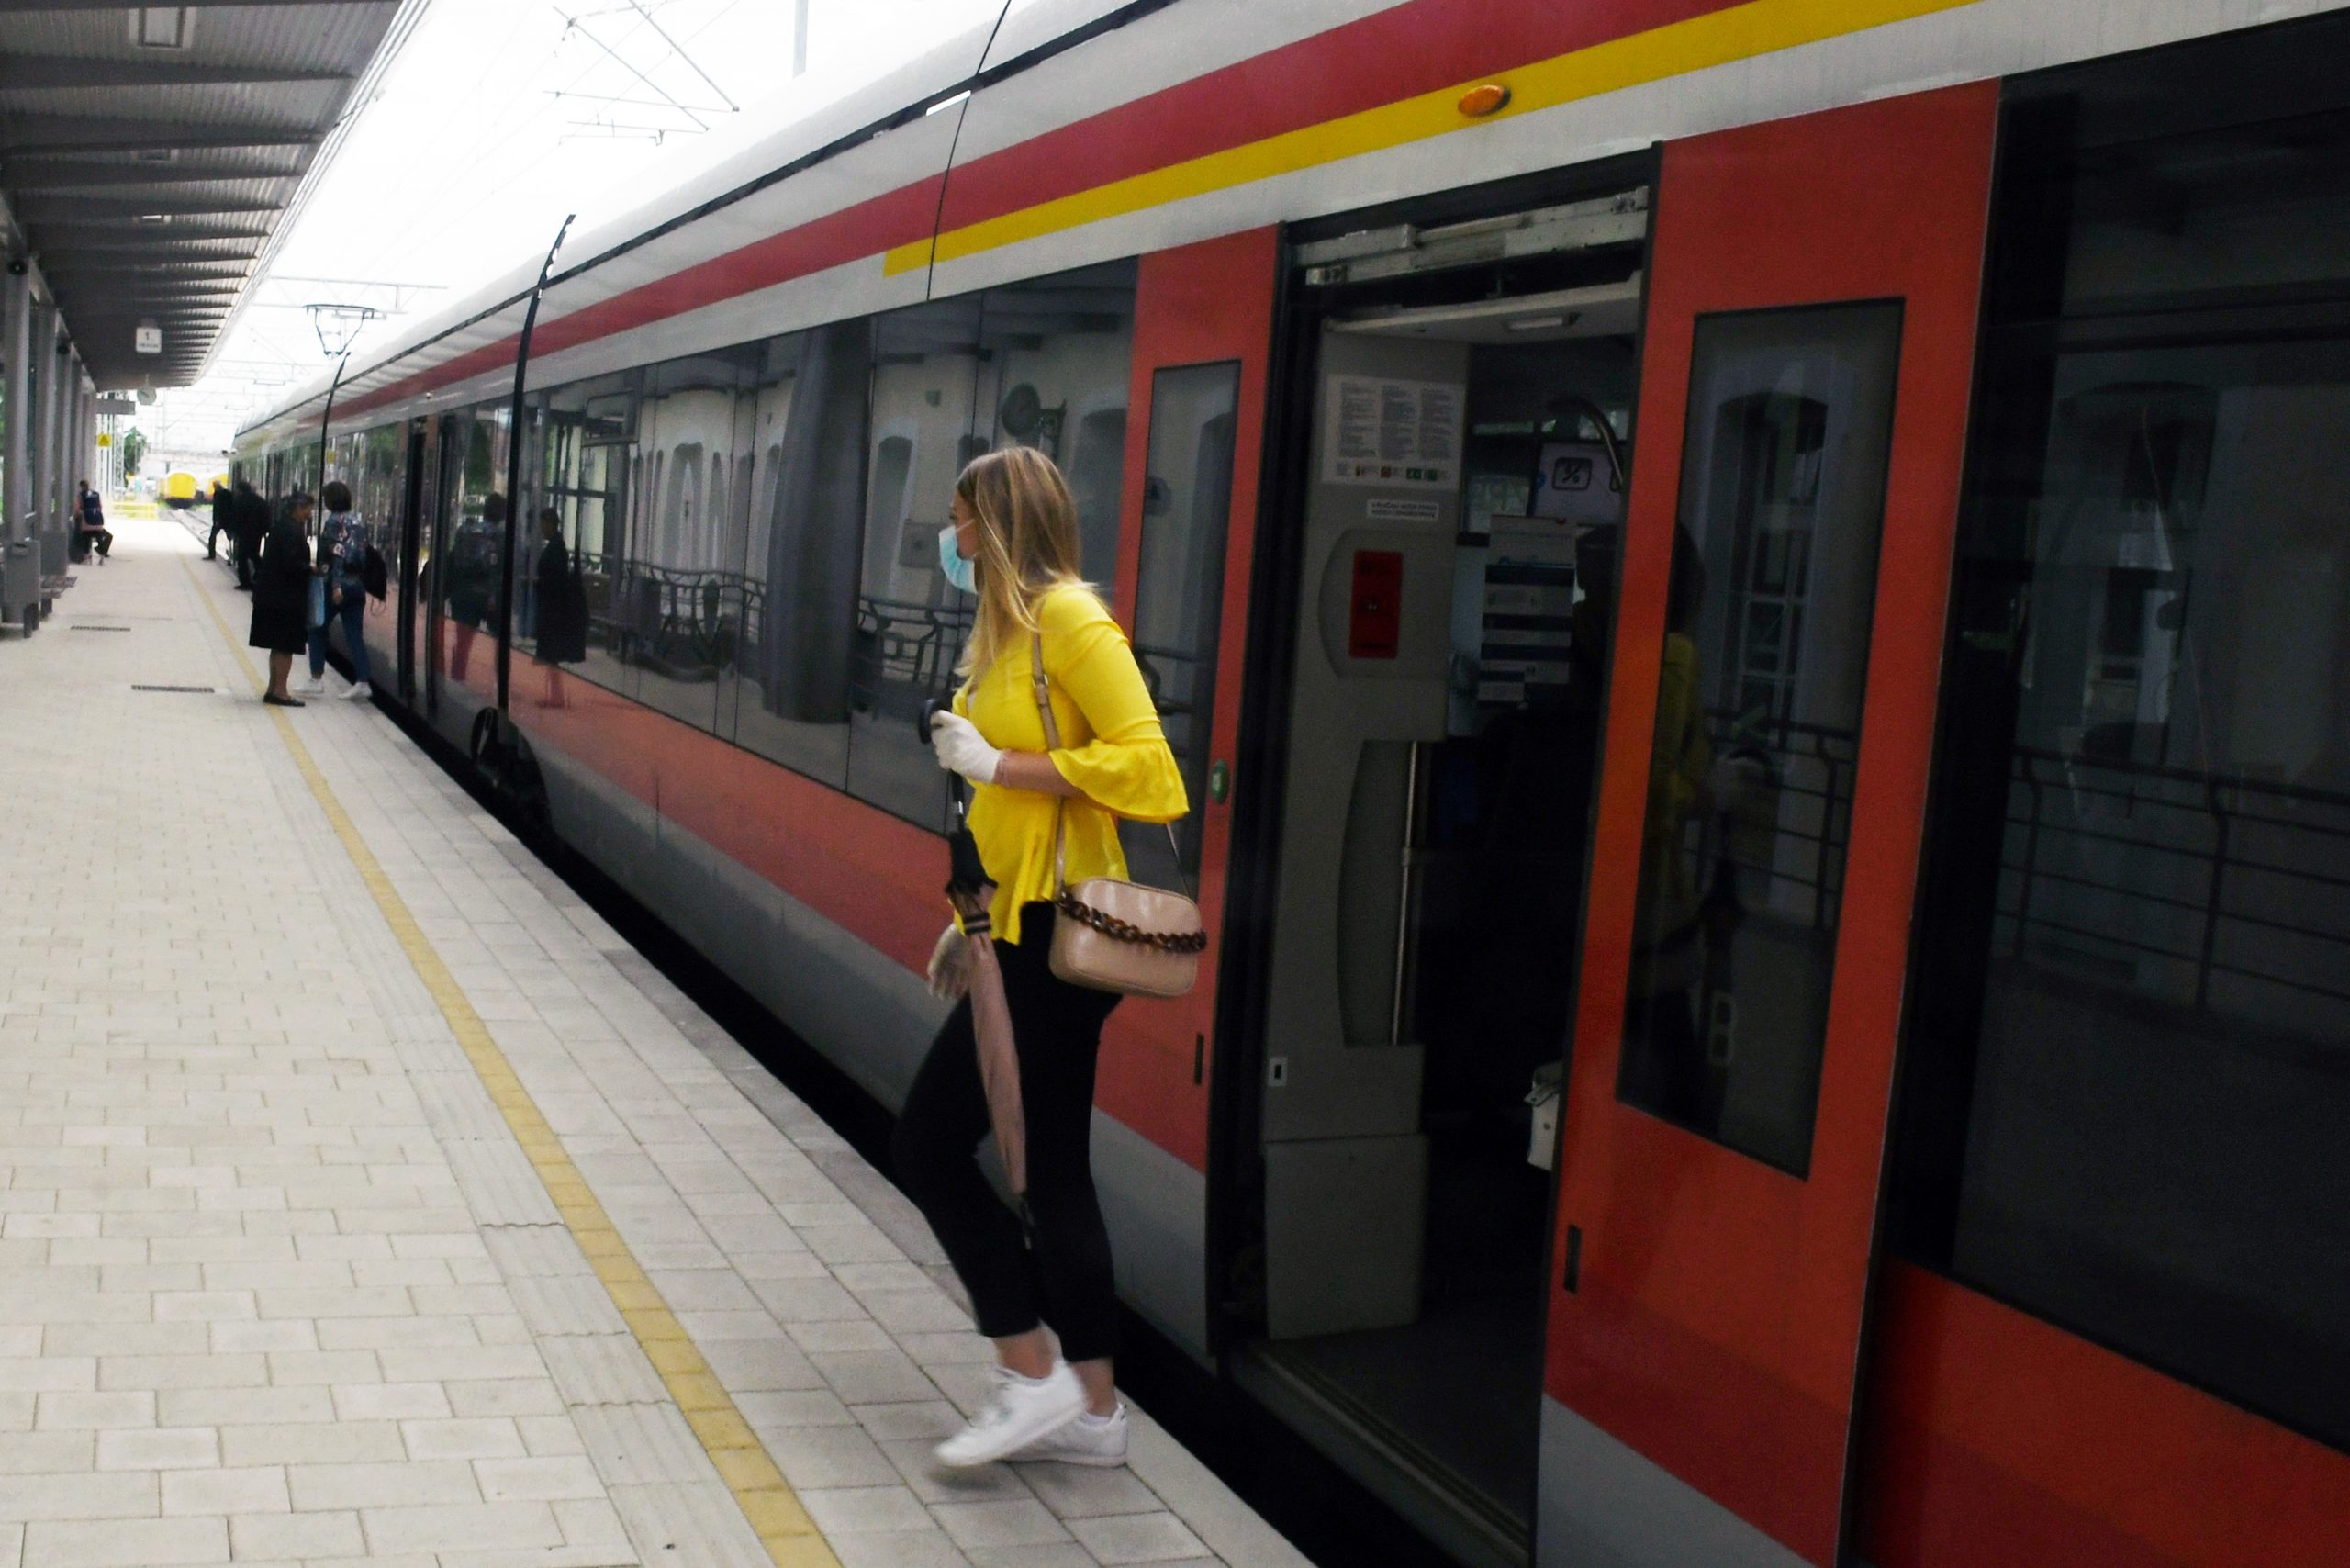 11.05.2020., Sisak - Nakon sto je 22.ozujka prekinut zeljeznicki promet, od danas putnicki vlakovi ponovo voze.
Photo: Nikola Cutuk/PIXSELL